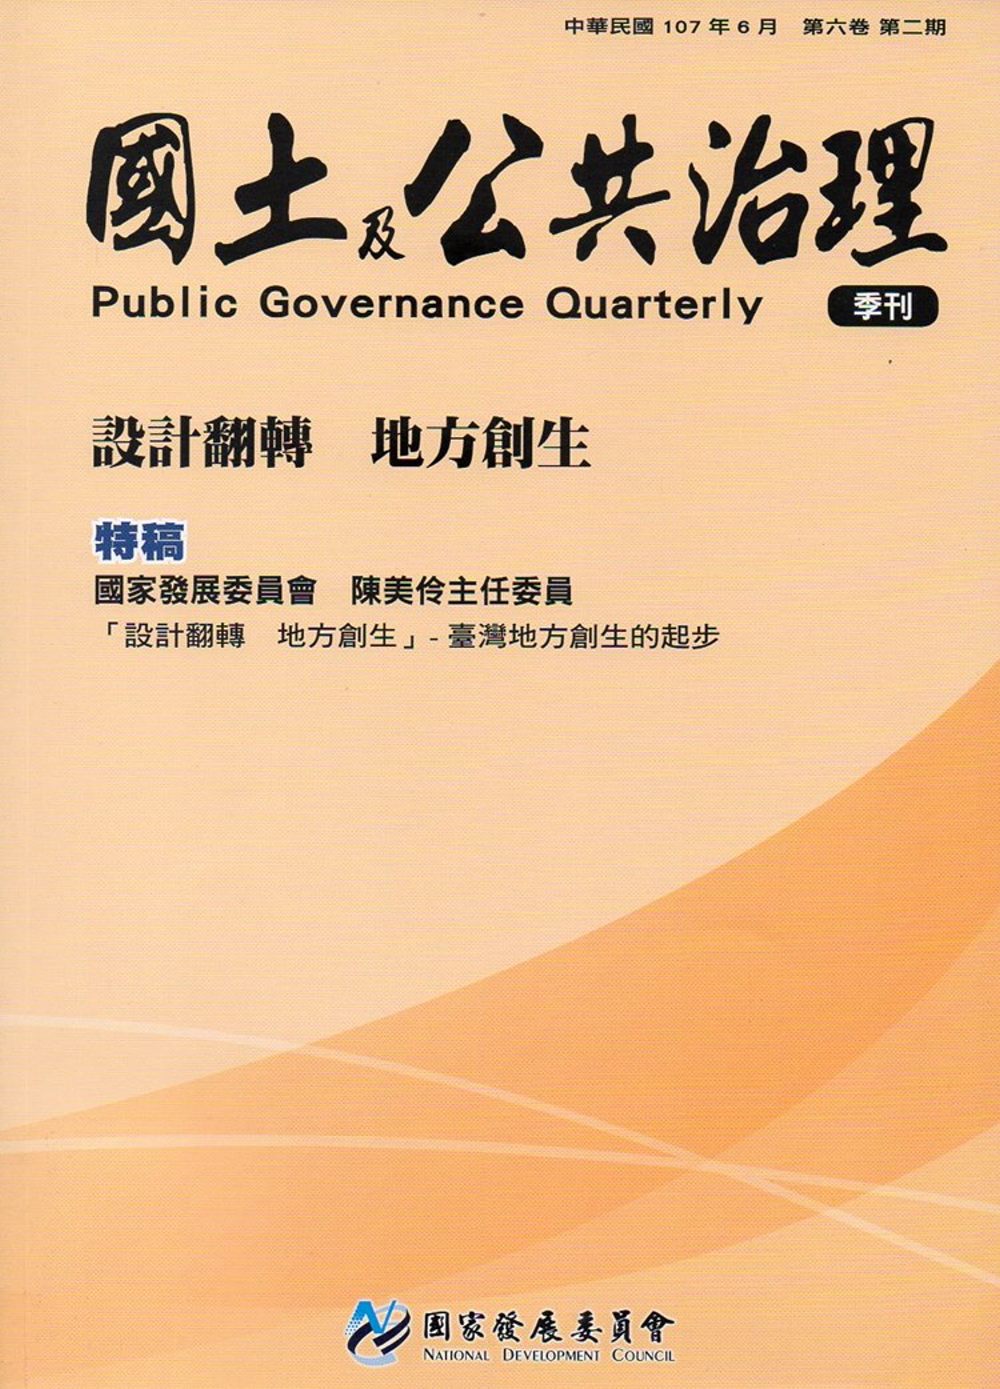 國土及公共治理季刊第6卷第2期(107.06)